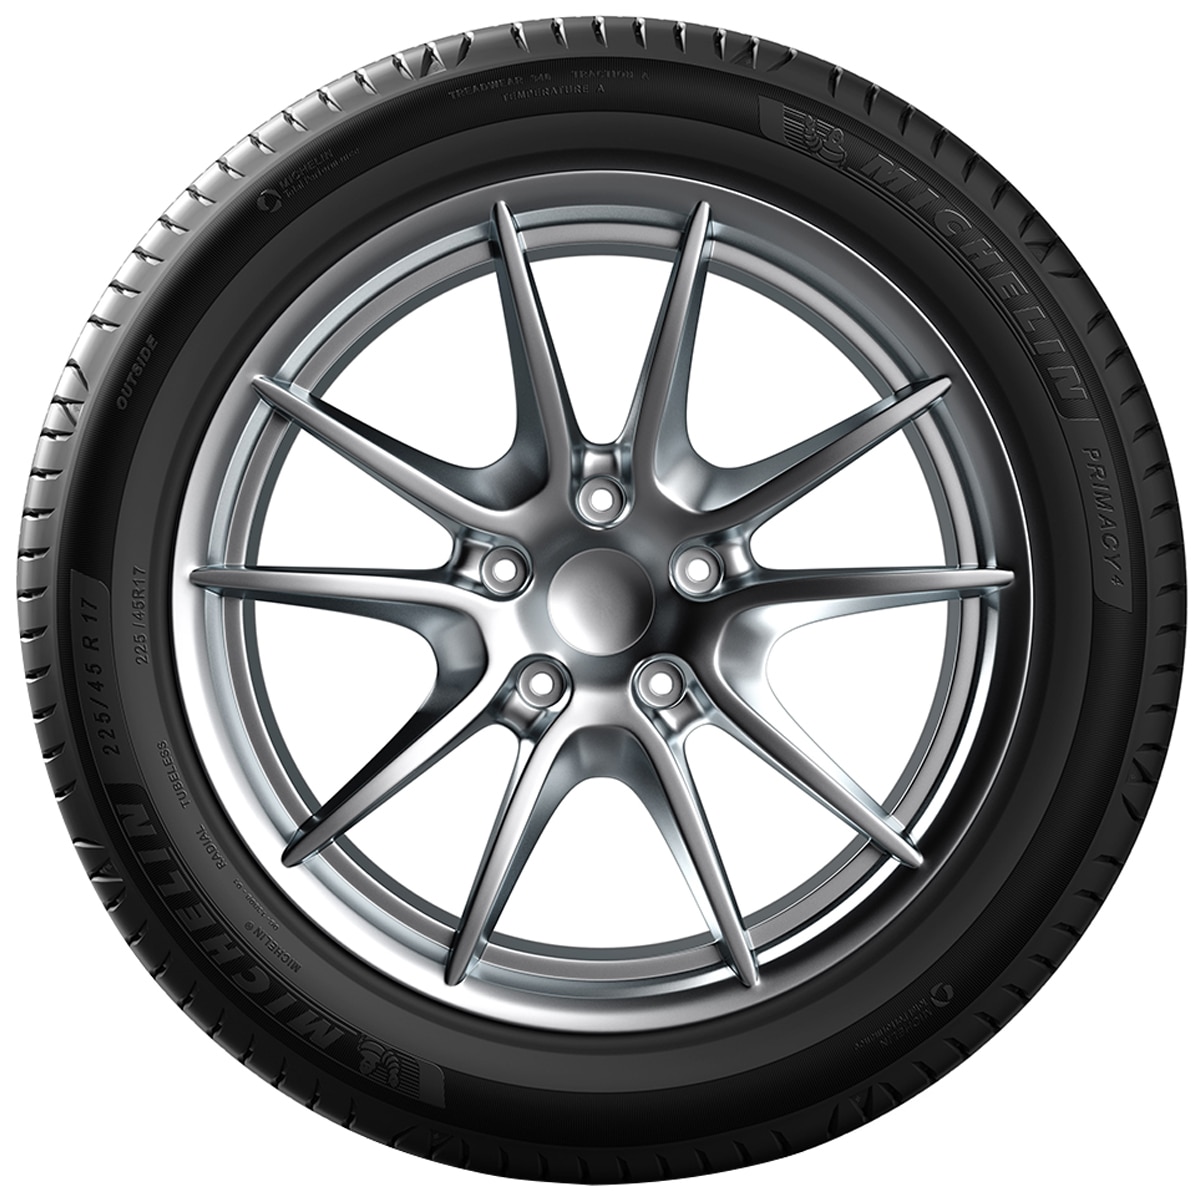 225/60R17 103V PRIMACY 4 - Tyre